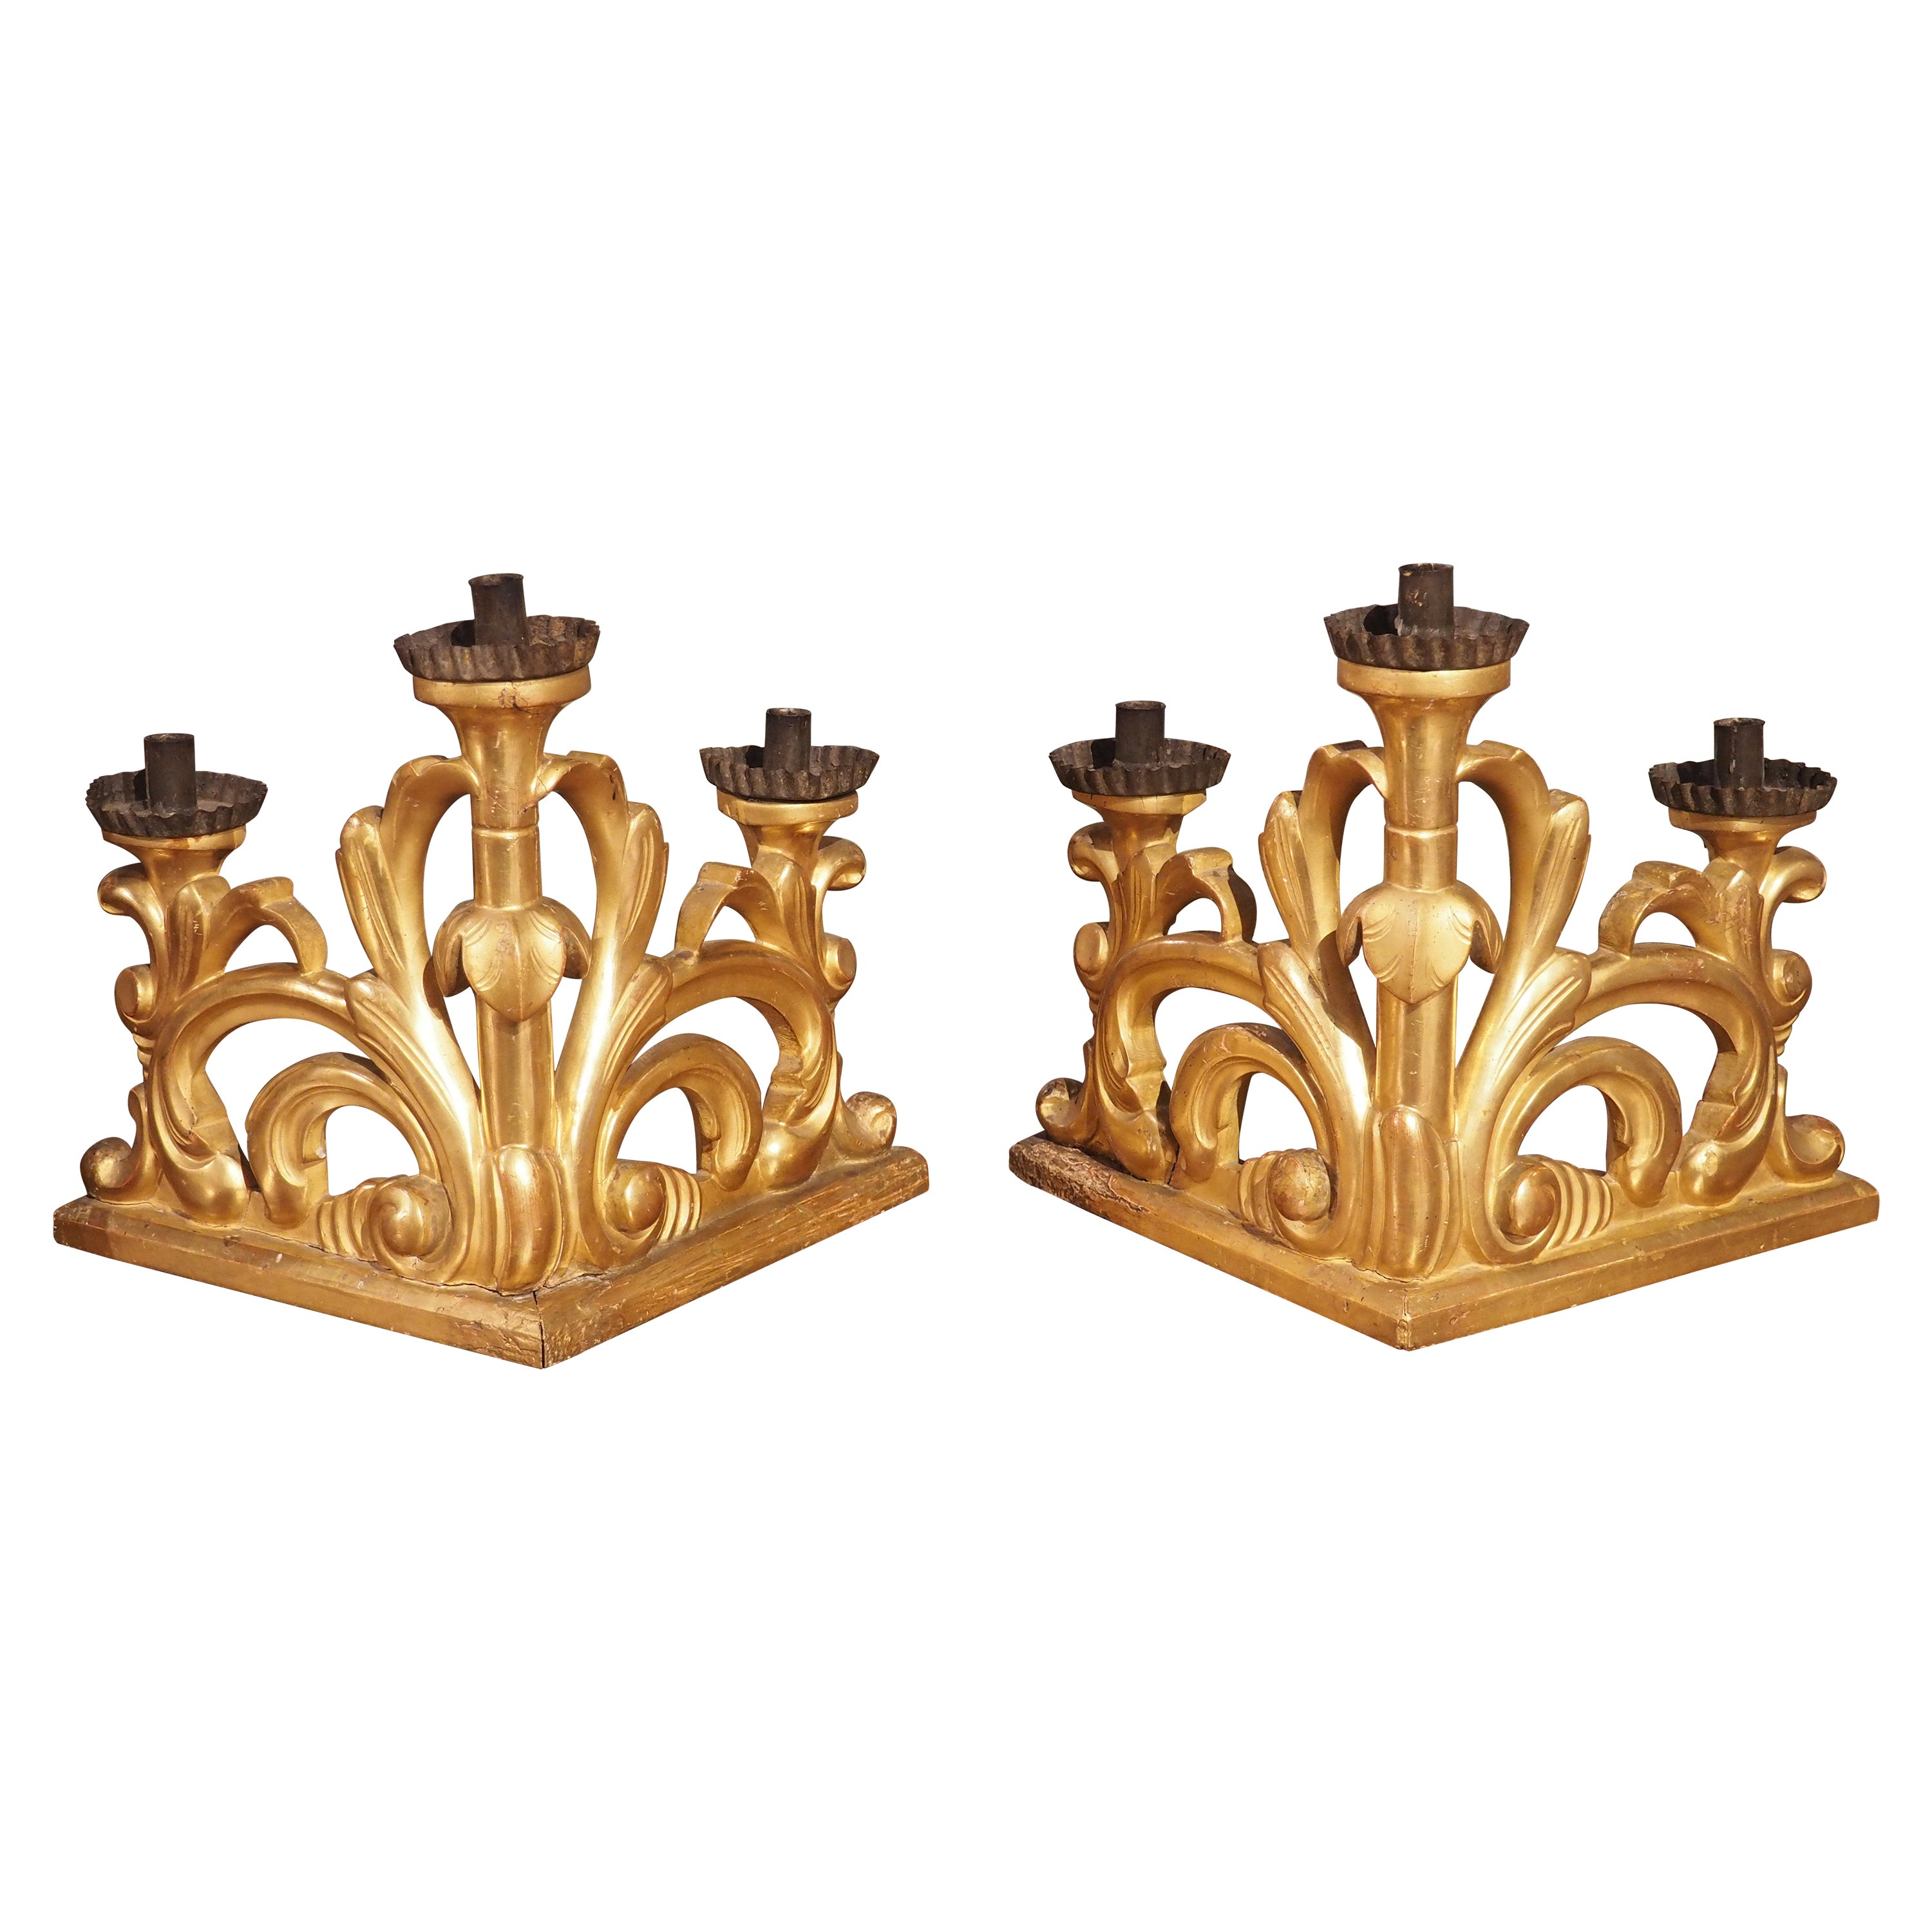 Paire de chandeliers baroques italiens en bois doré de la fin du 18e siècle